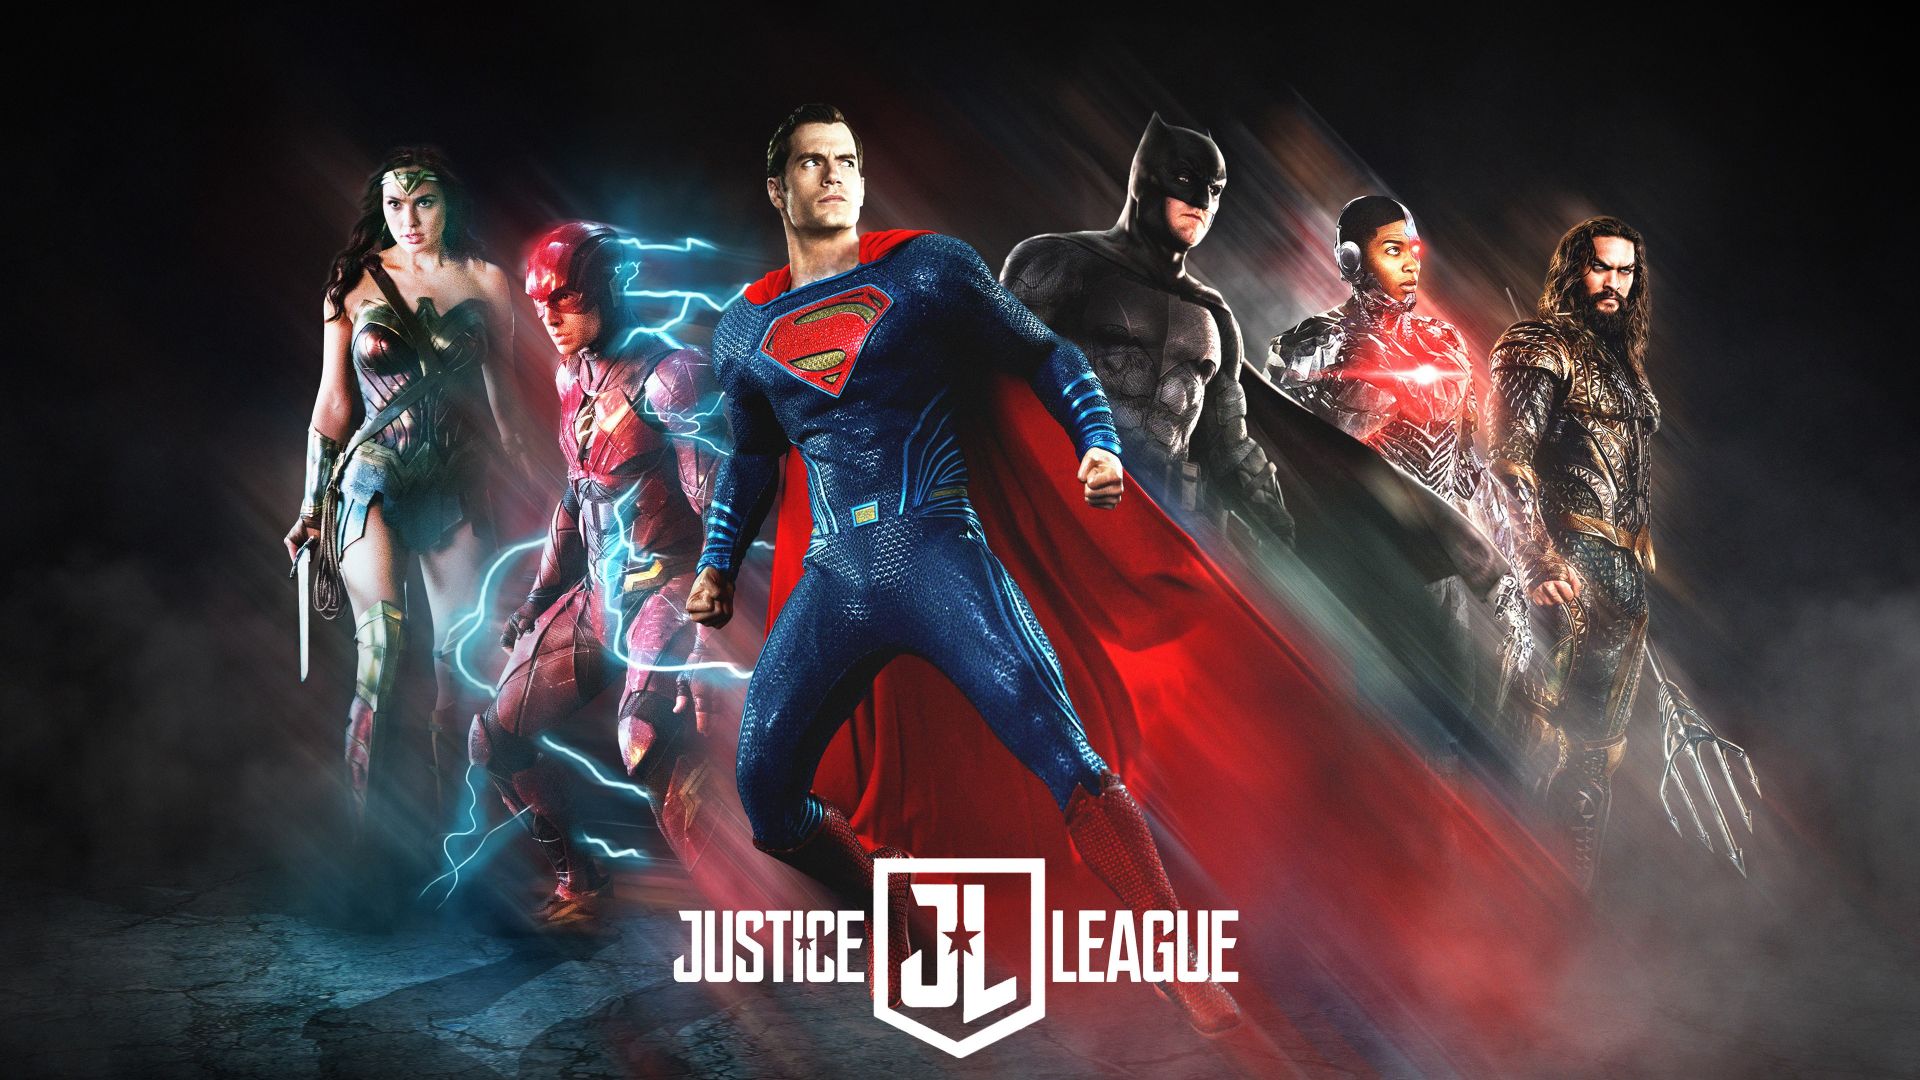 fond d'écran de film de la ligue de justice,super héros,film,personnage fictif,héros,affiche